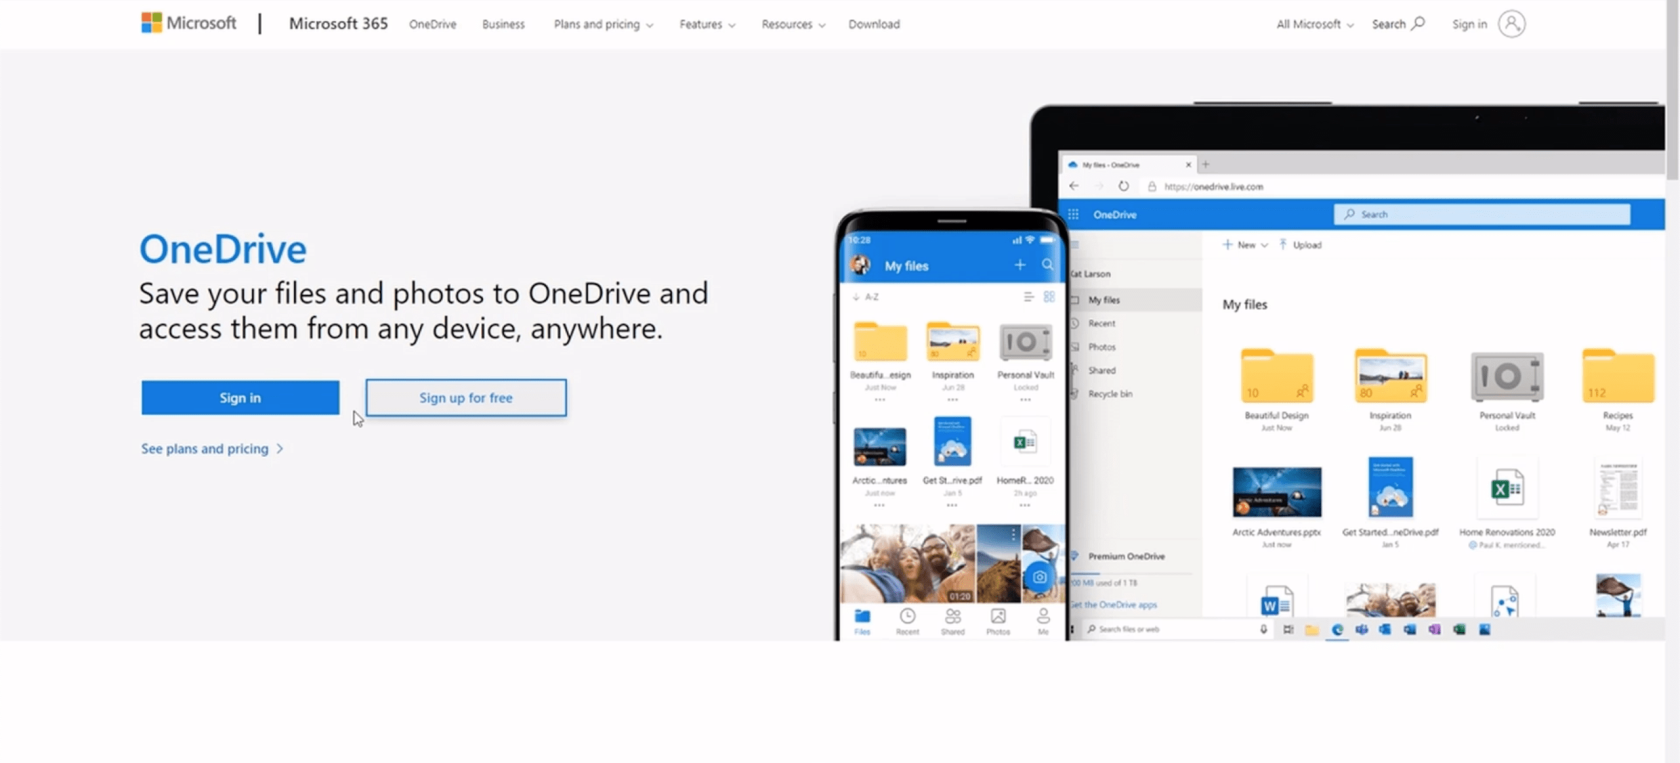 Power Apps-omgeving instellen: verbinding maken met OneDrive en Google Drive